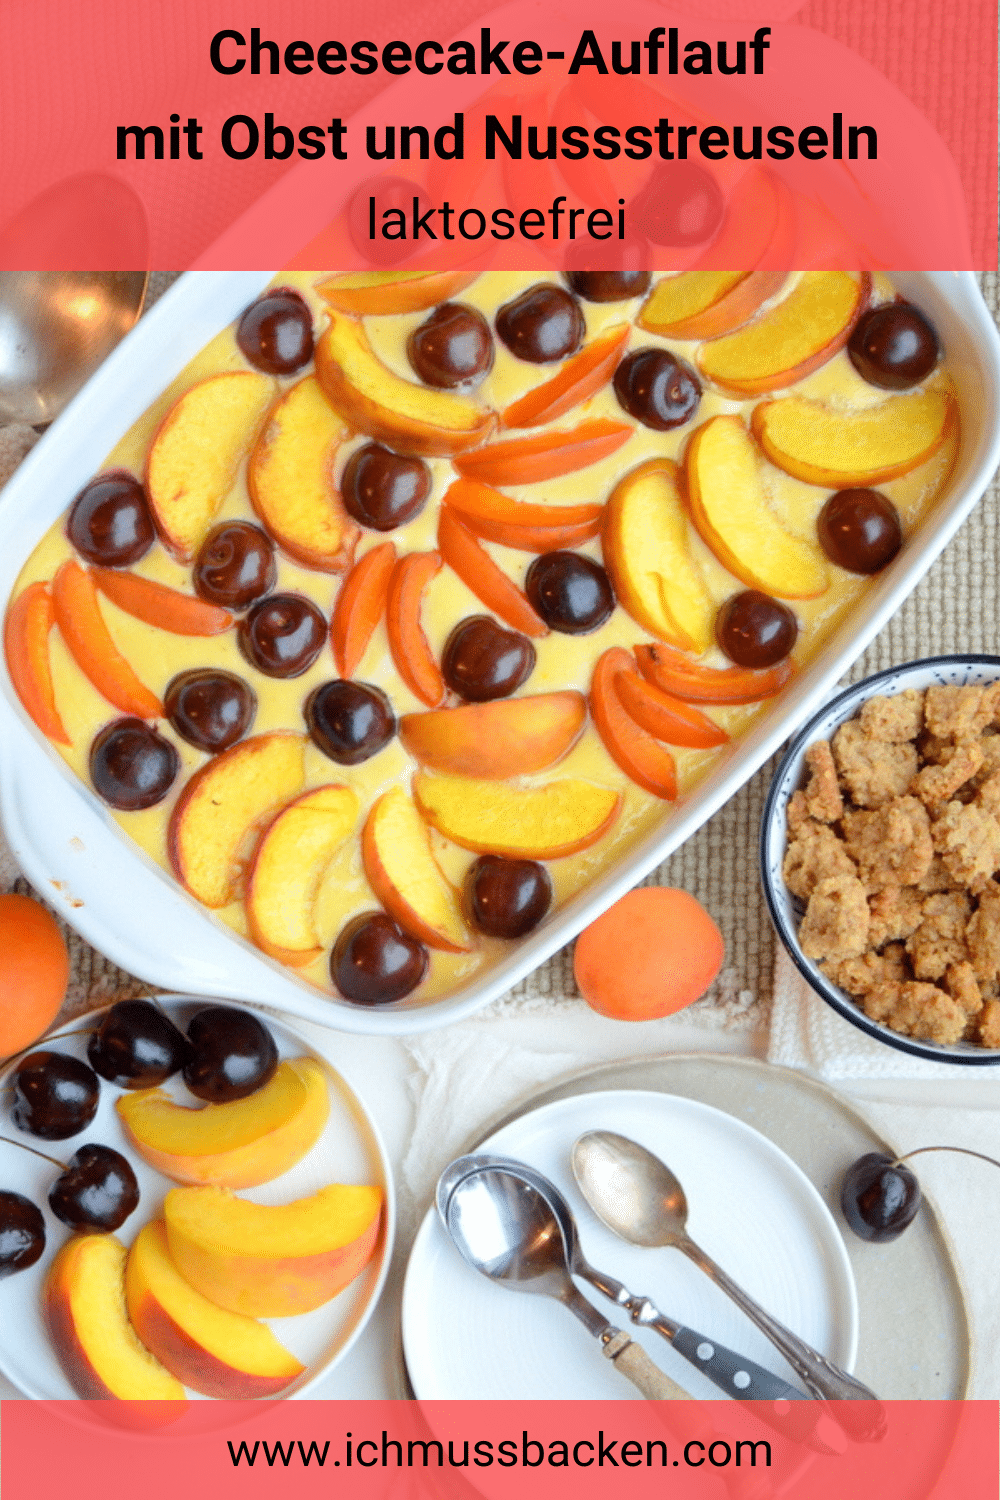 Cheesecake-Auflauf mit Obst und Nussstreuseln